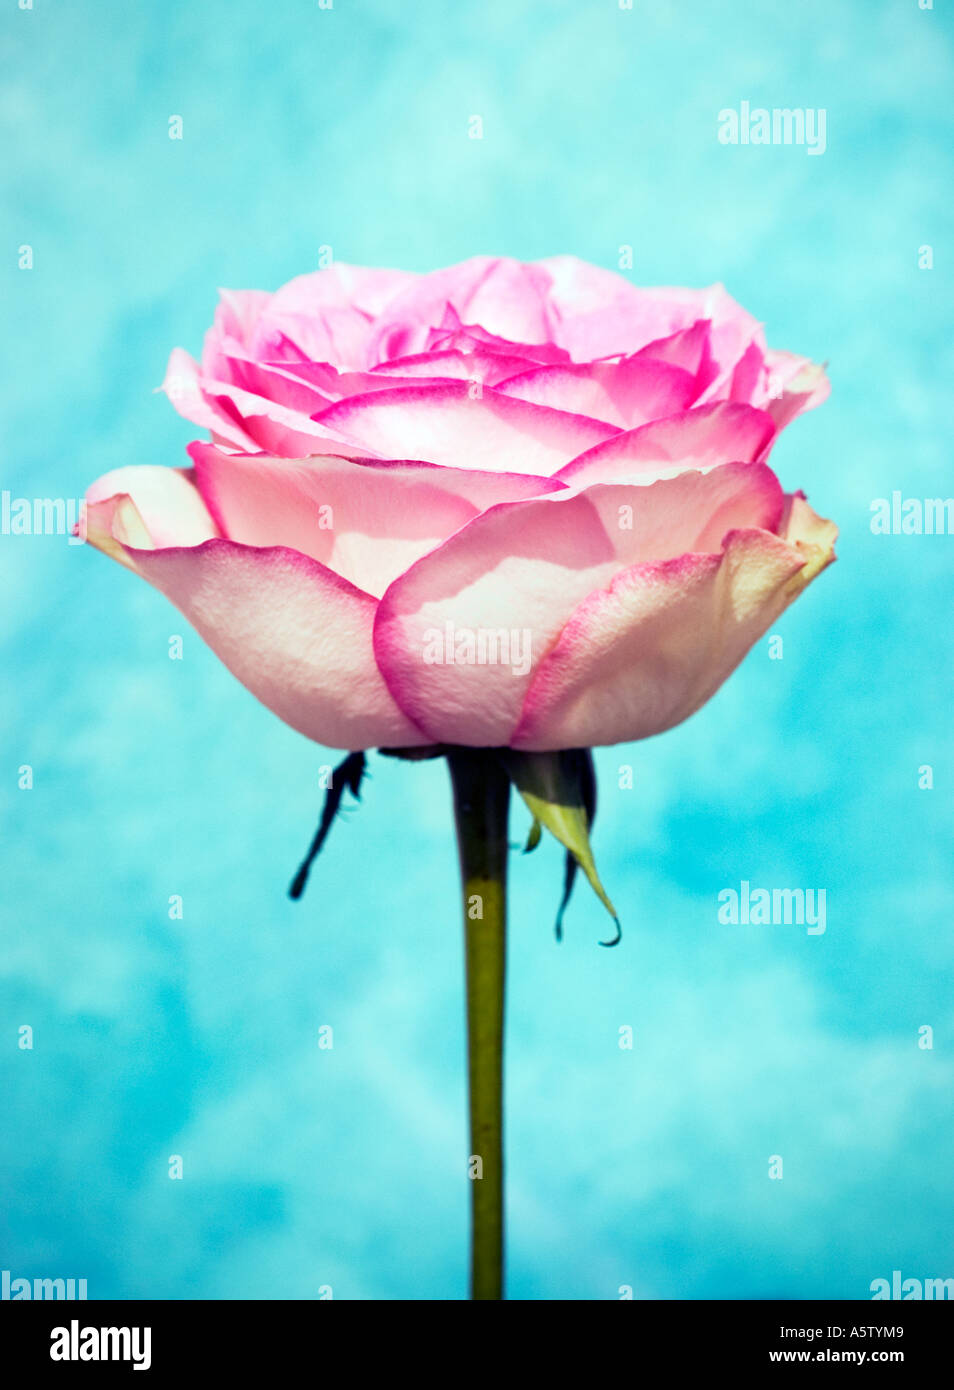 Nome comune: Rose nome latino: Rosa Foto stock - Alamy